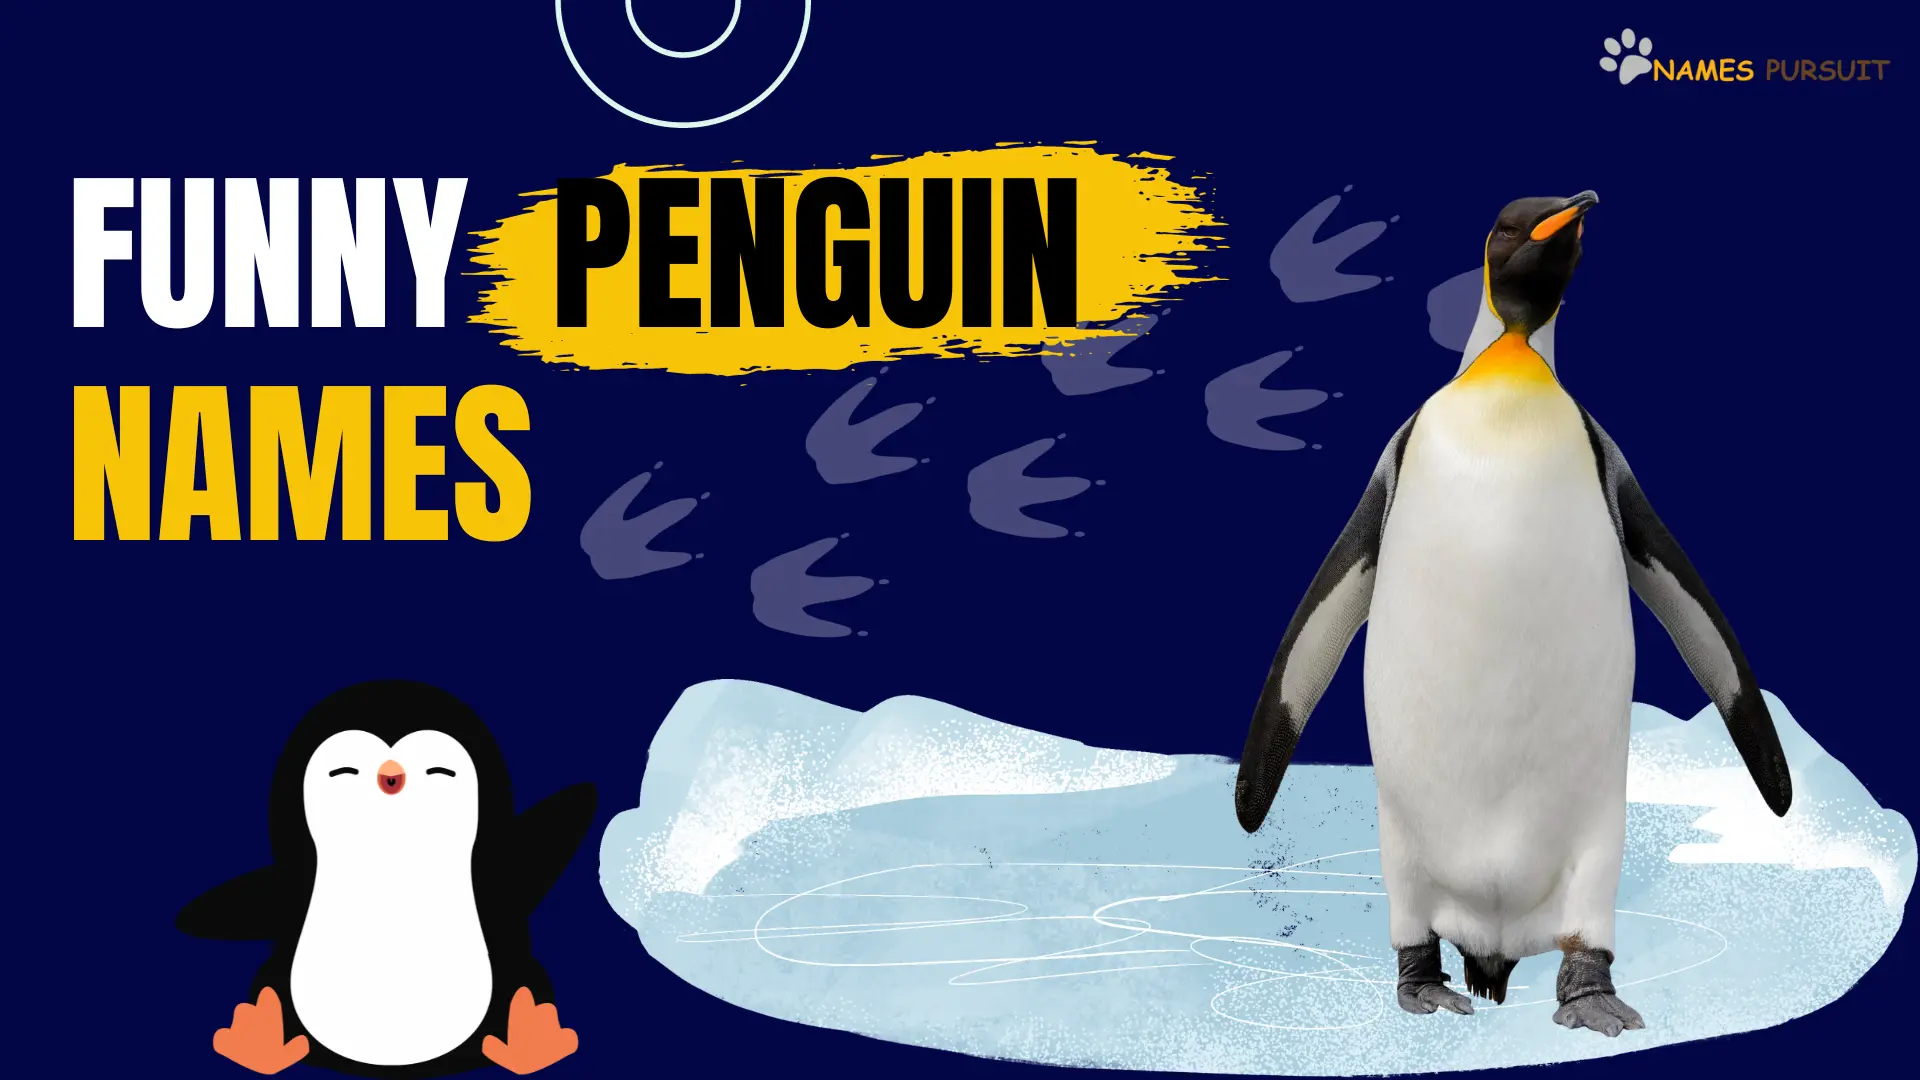 Funny Penguin Names -names pursuit